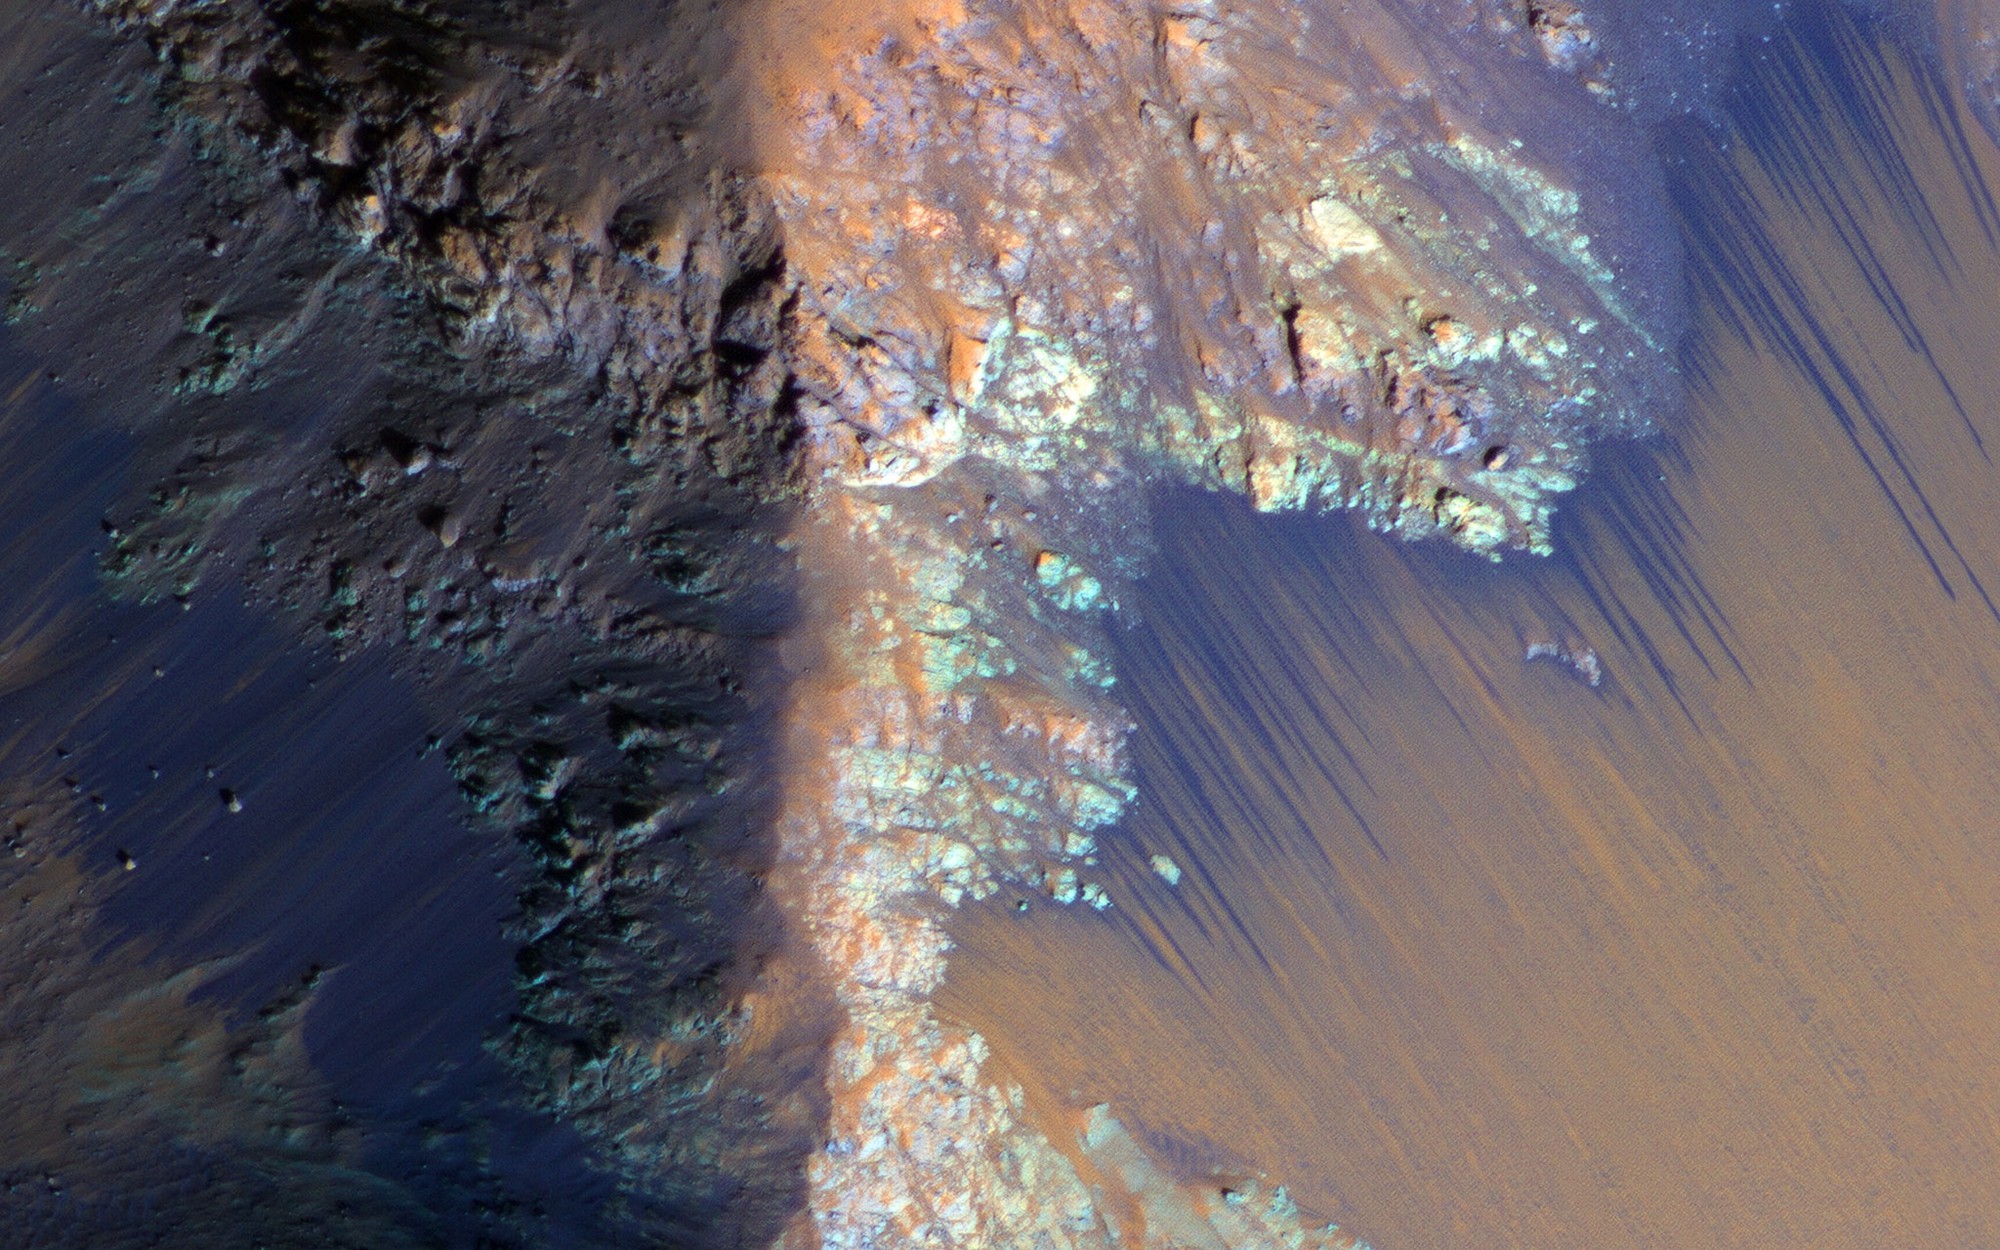 Tìm ra nguồn nước uống được khổng lồ trên sao Hỏa, hoàn toàn nằm trong phạm vi có thể khai thác - Ảnh 1.